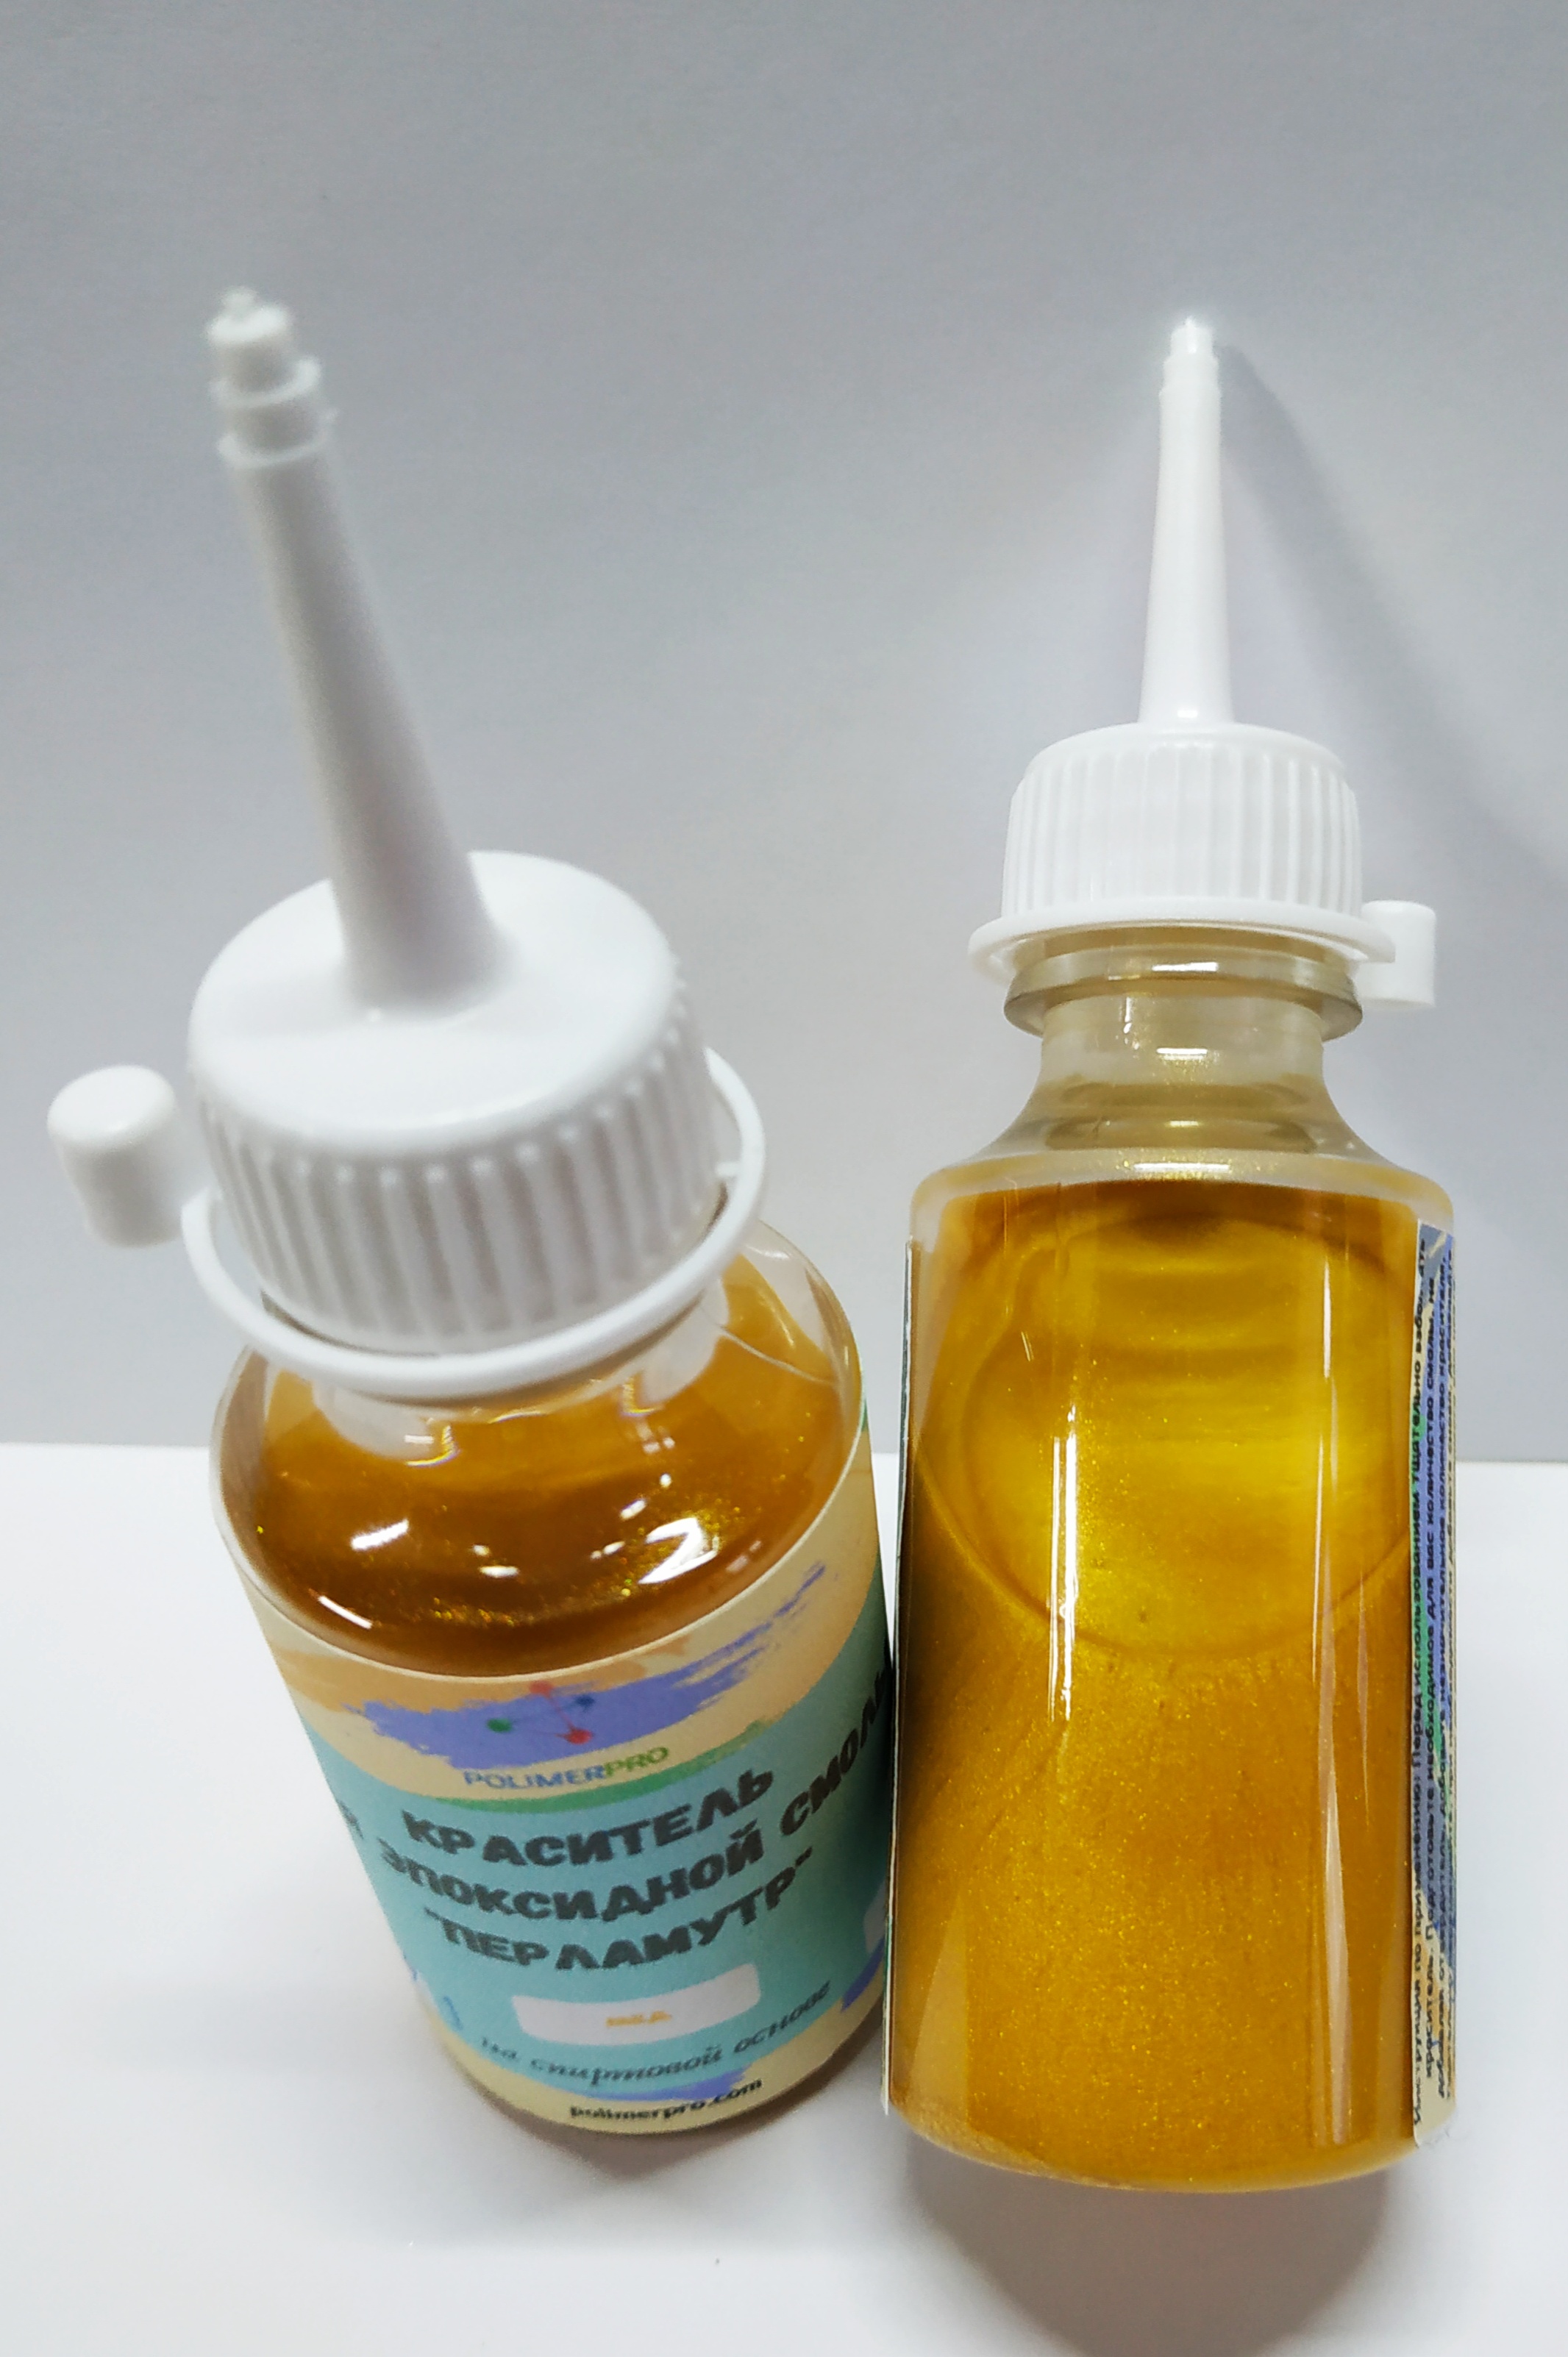 Краситель для полимеров перламутровый, 20г мед от компании "POLIMERPRO"